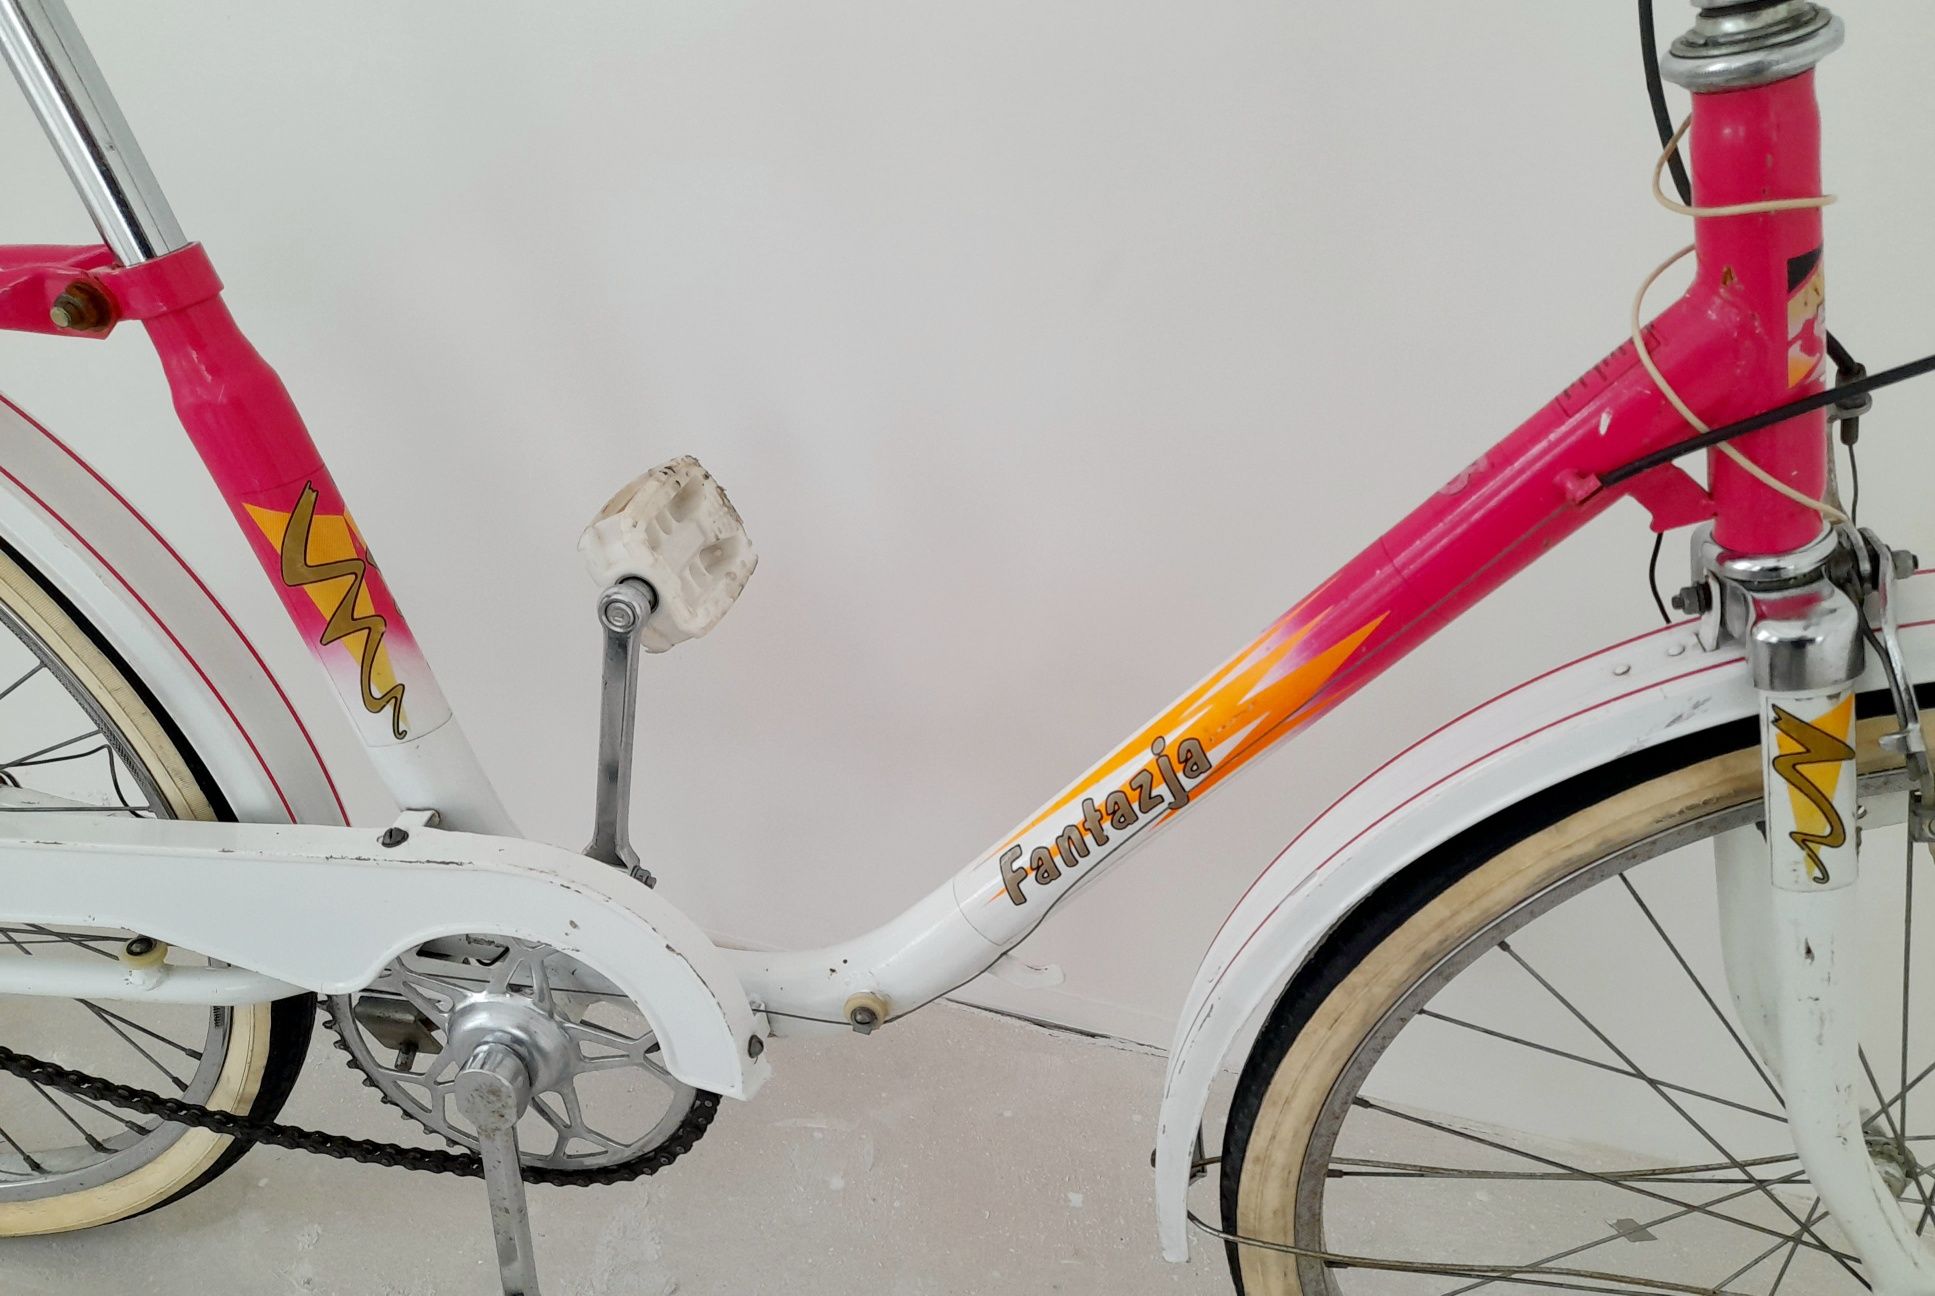 FSM Fantazja rower sprawny oryginał zabytkowy unikat prl romet wigry